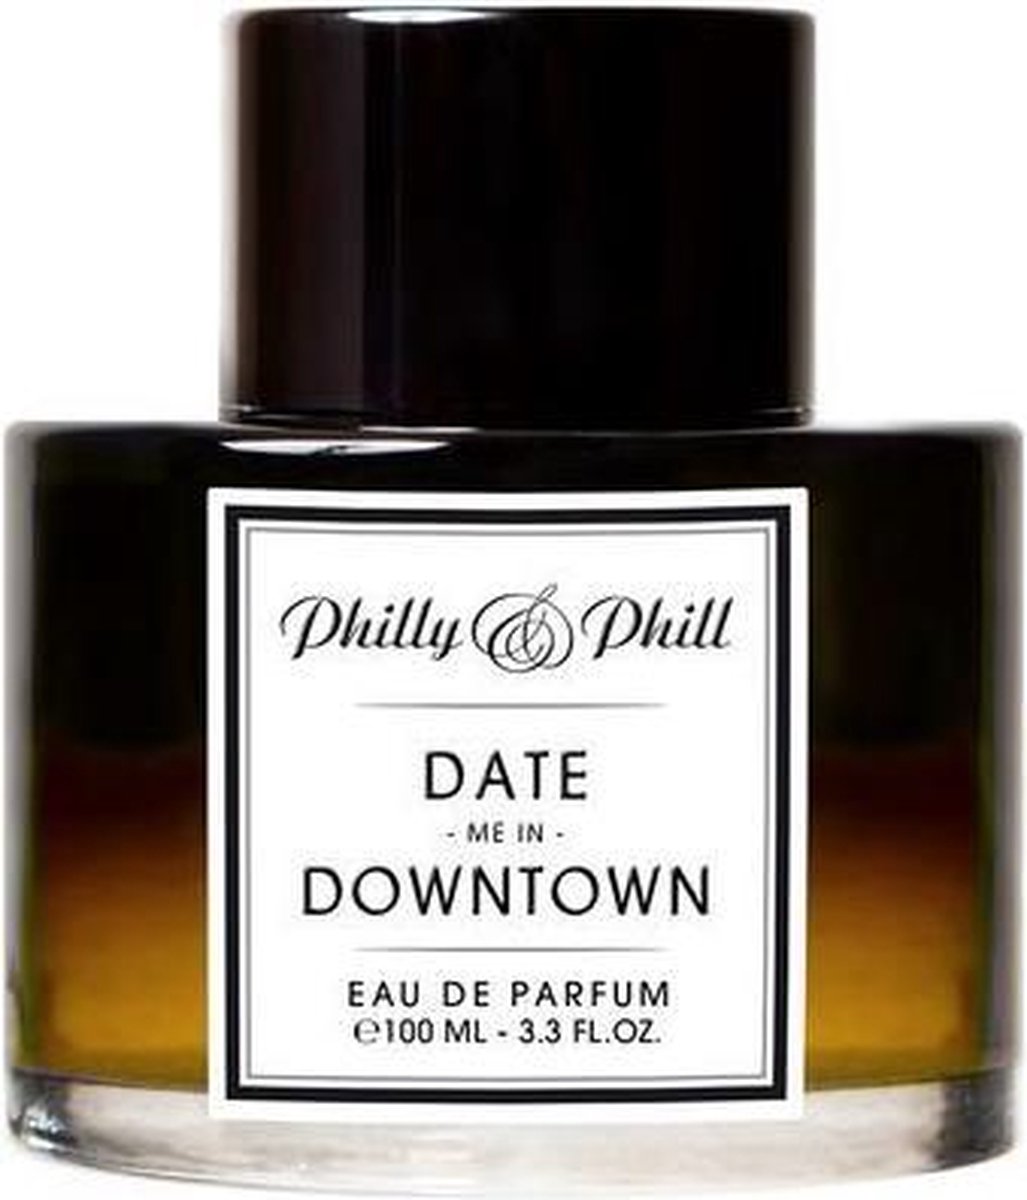 Philly & Phill Date Me In Downtown eau de parfum 100ml eau de parfum